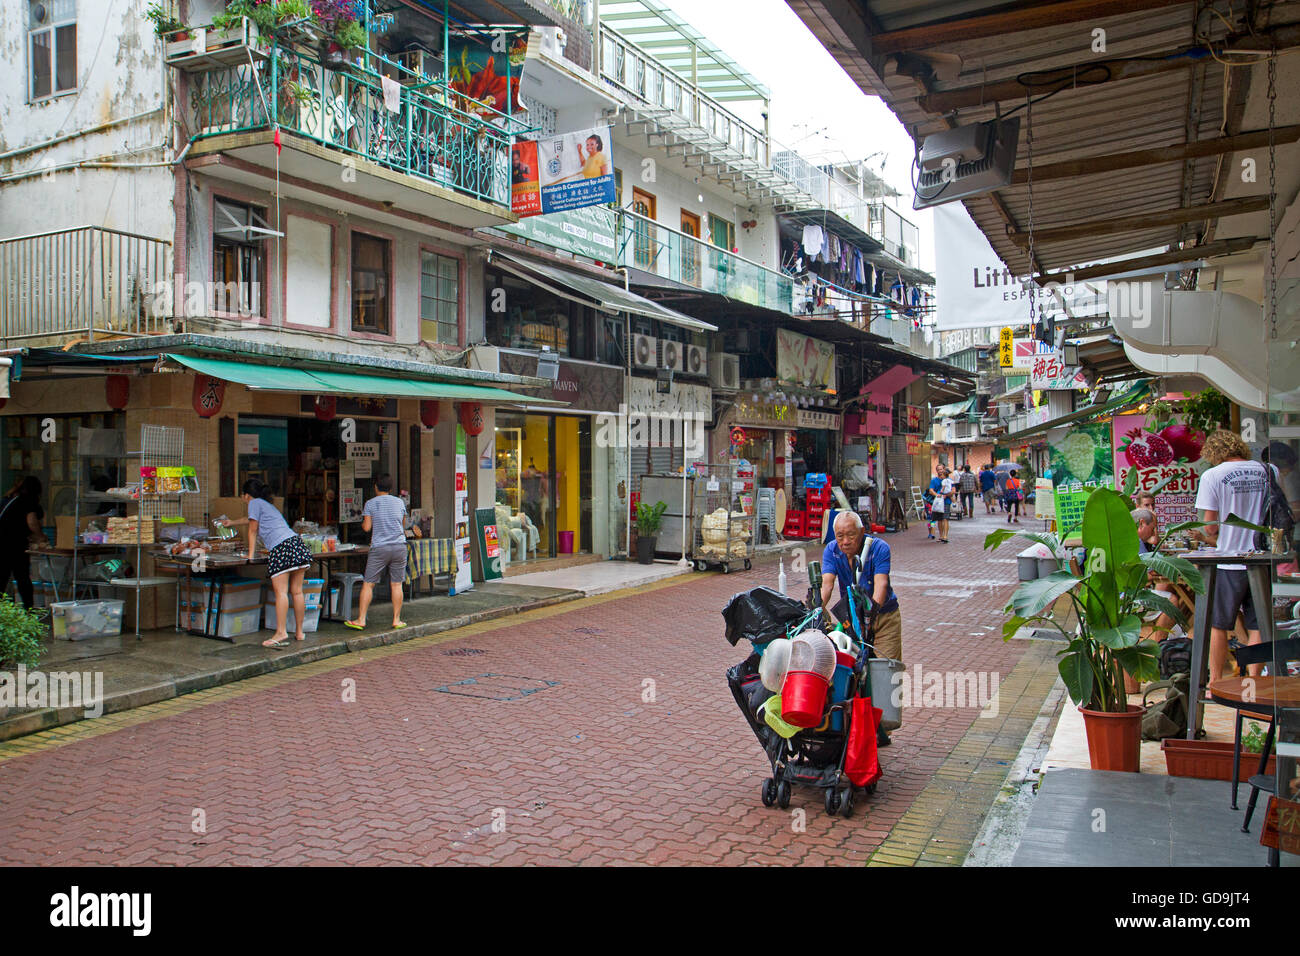 Street in Sai Kung, Hong Kong Stock Photo